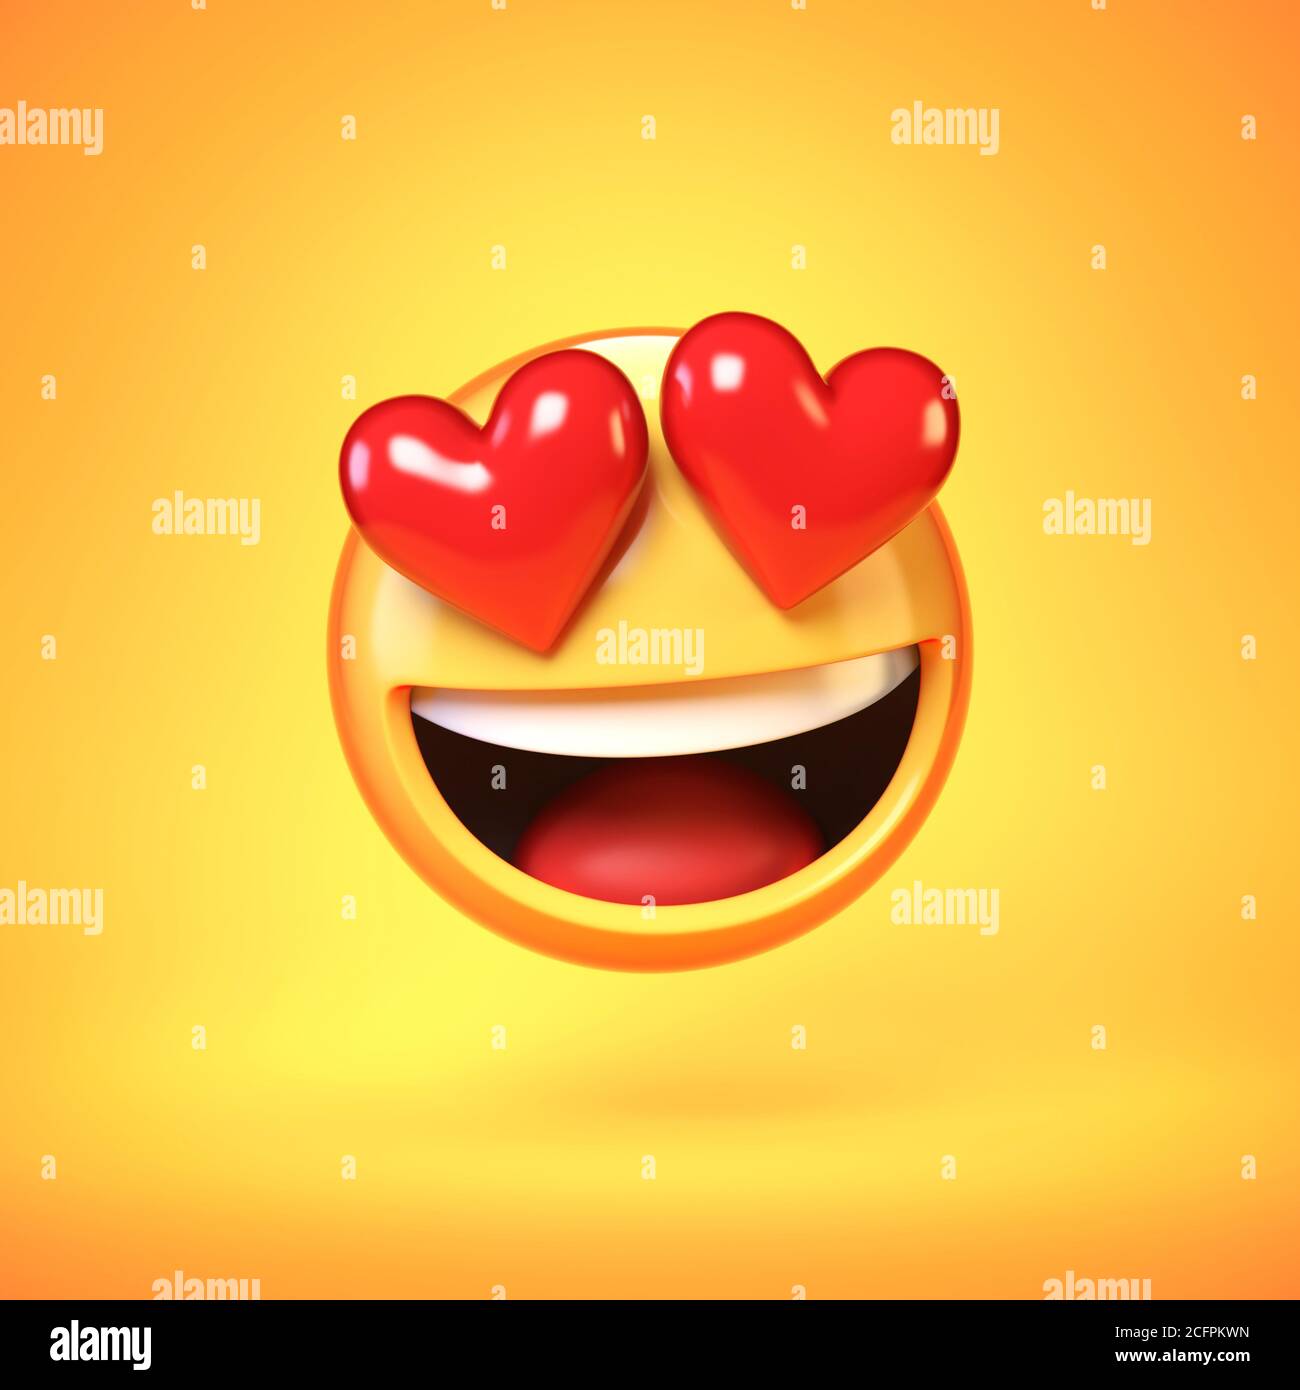 Tombant dans l'amour emoji isolé sur fond jaune, coeur en forme d'yeux émoticone langue 3d rendu Banque D'Images